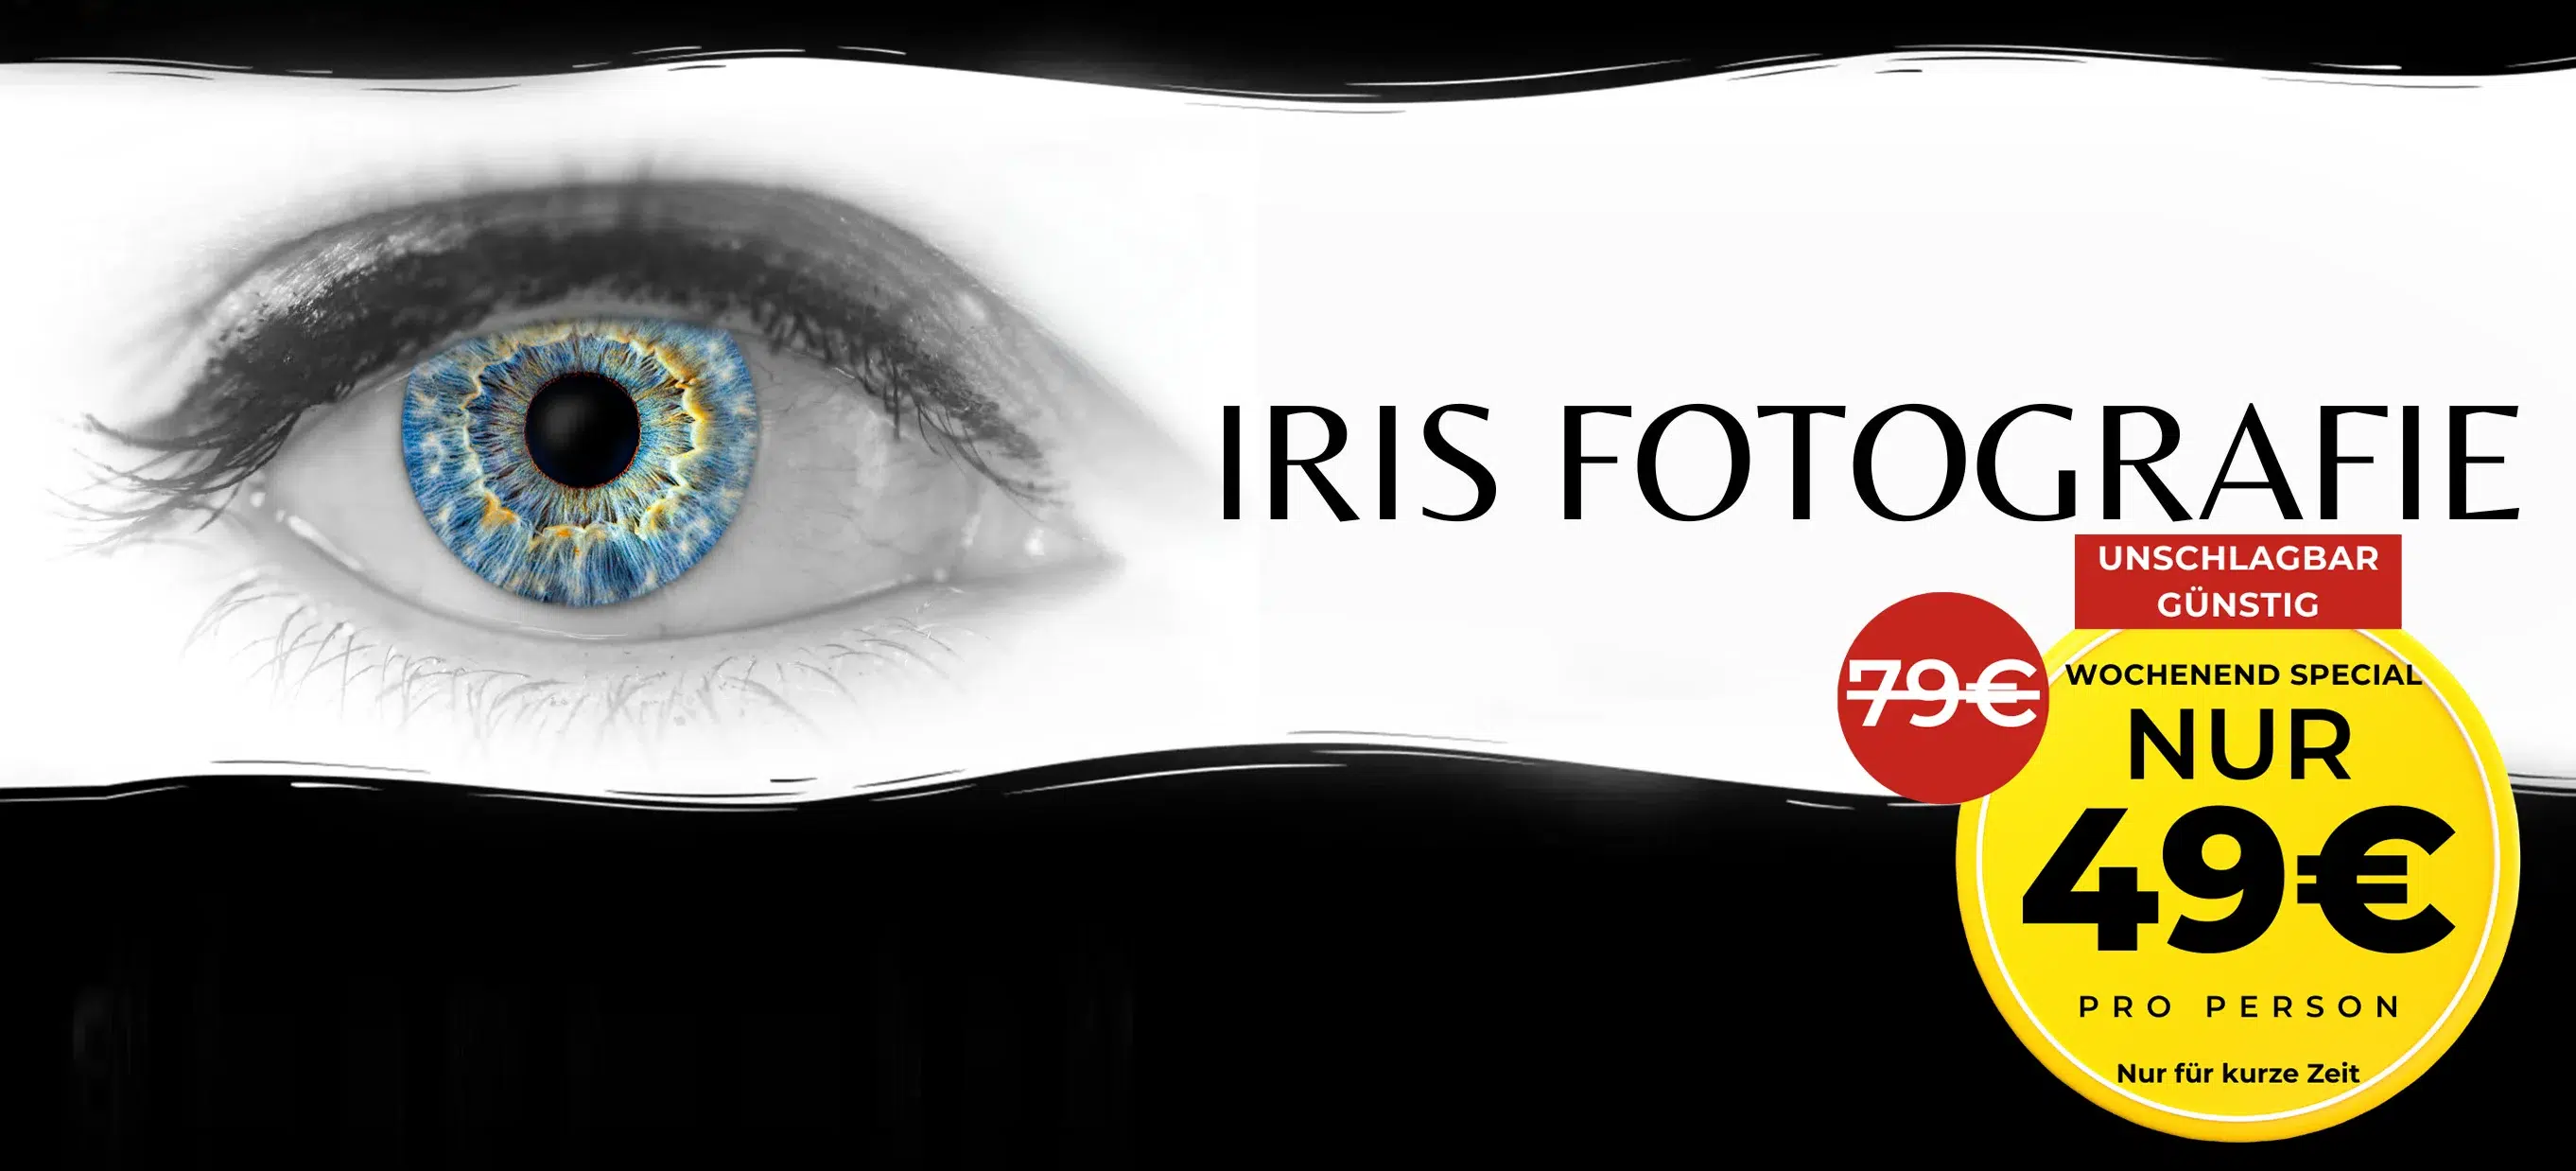 header iris fotografie wochenend special nur 49 euro